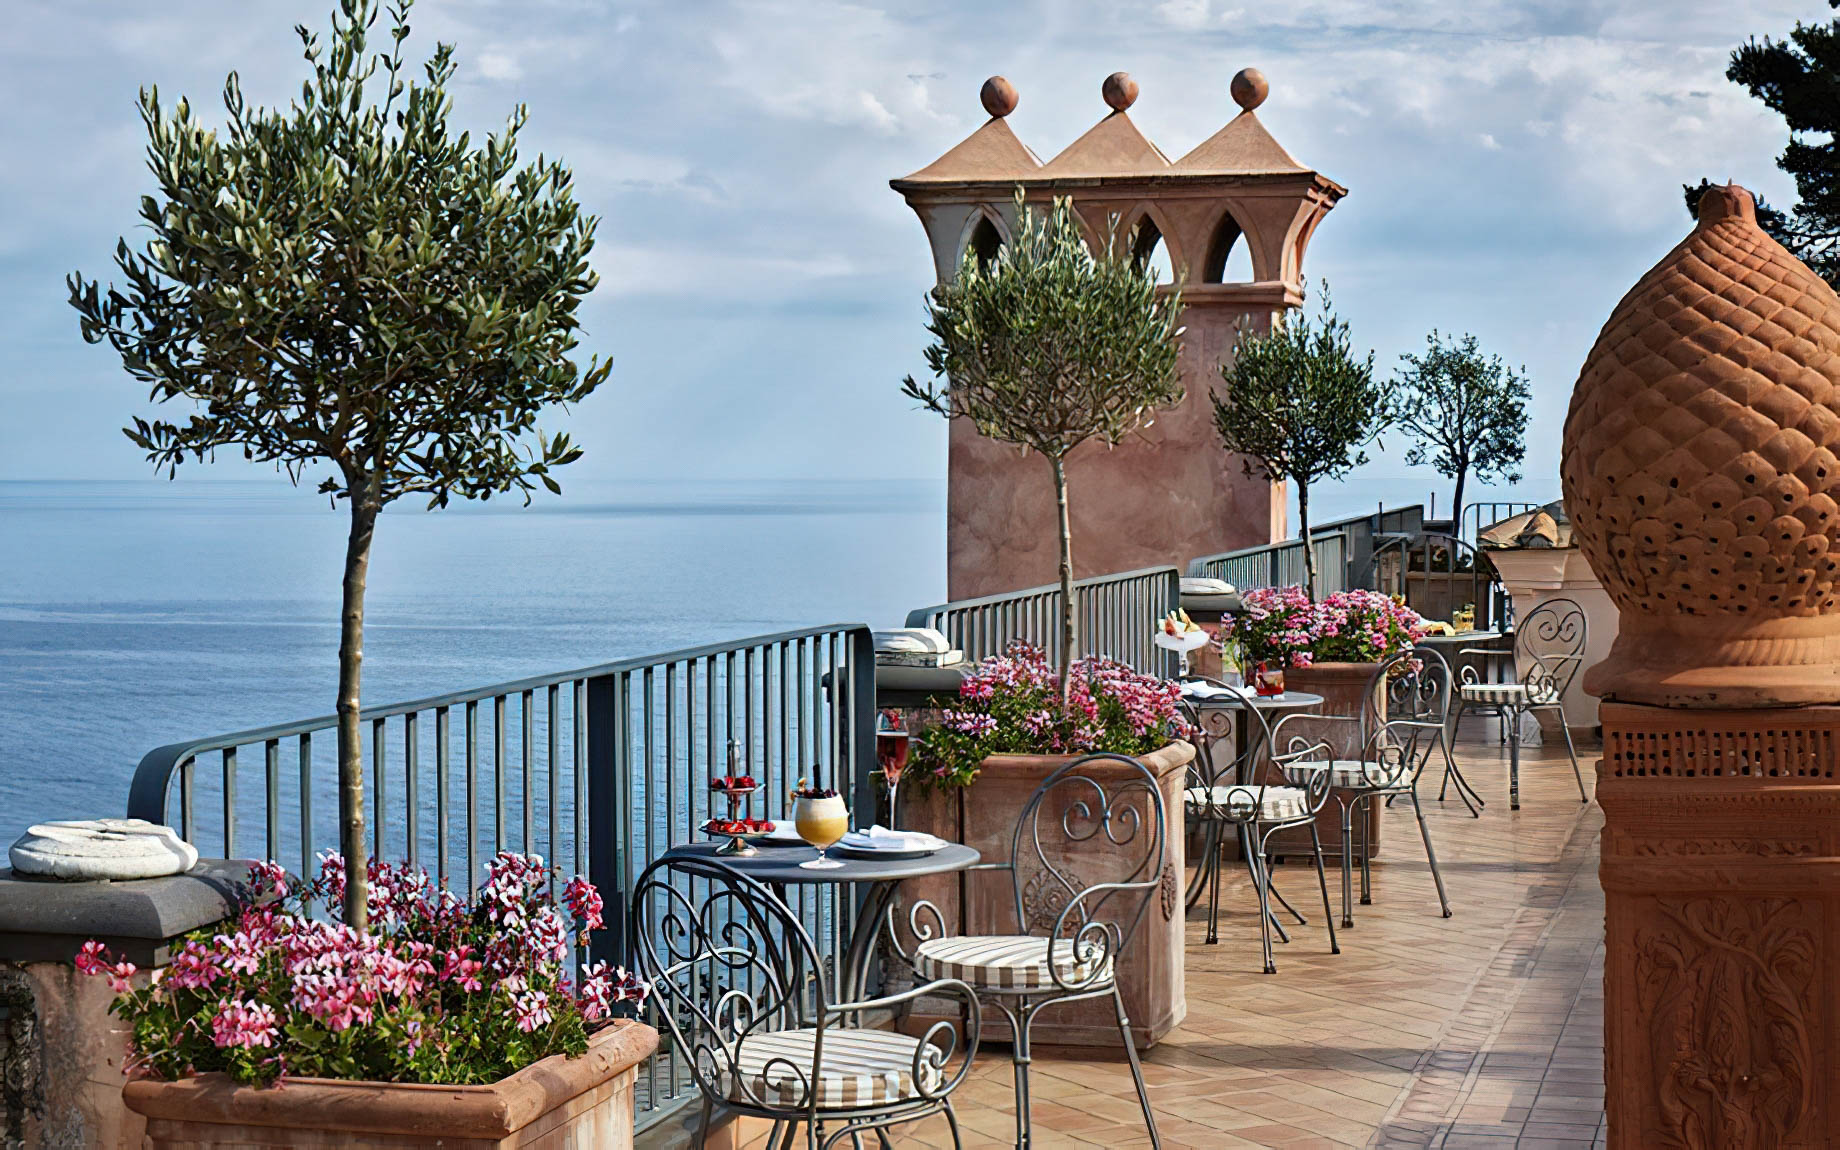 Palazzo Avino Hotel – Amalfi Coast, Ravello, Italy – Ocean View Dining